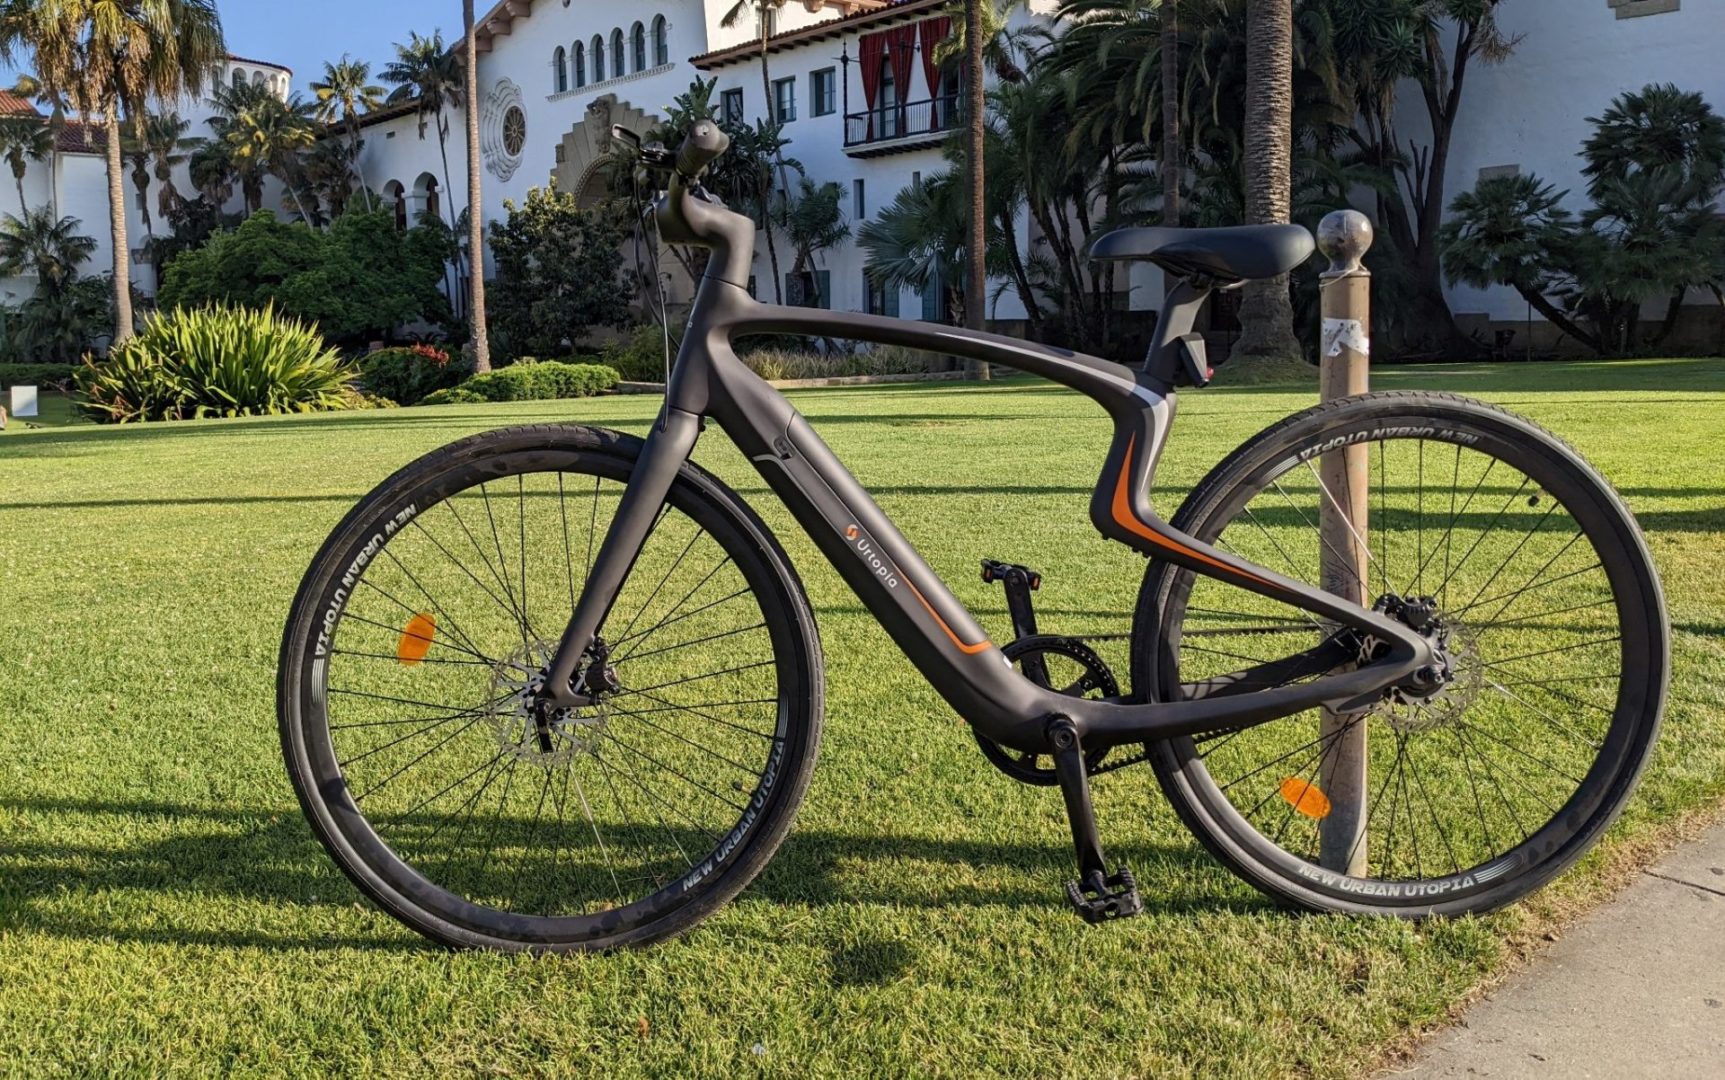 Urtopia Carbon E-Bike Review